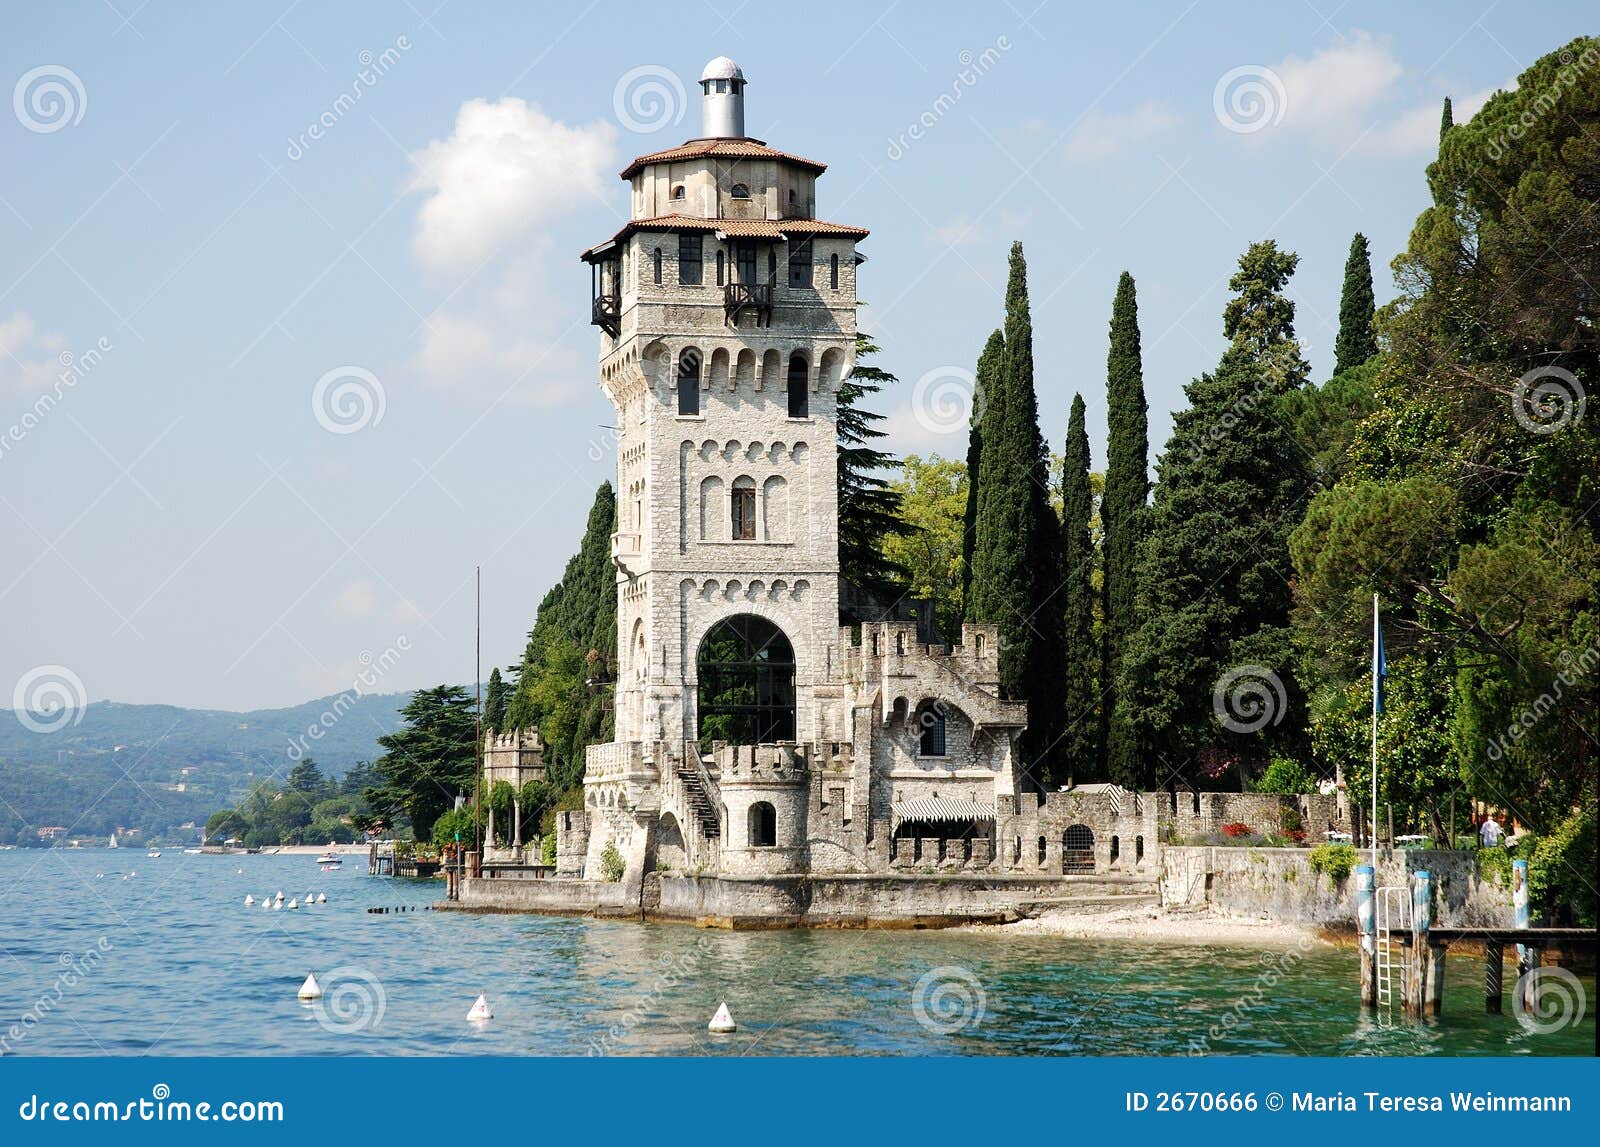 lake garda (italy) - tower